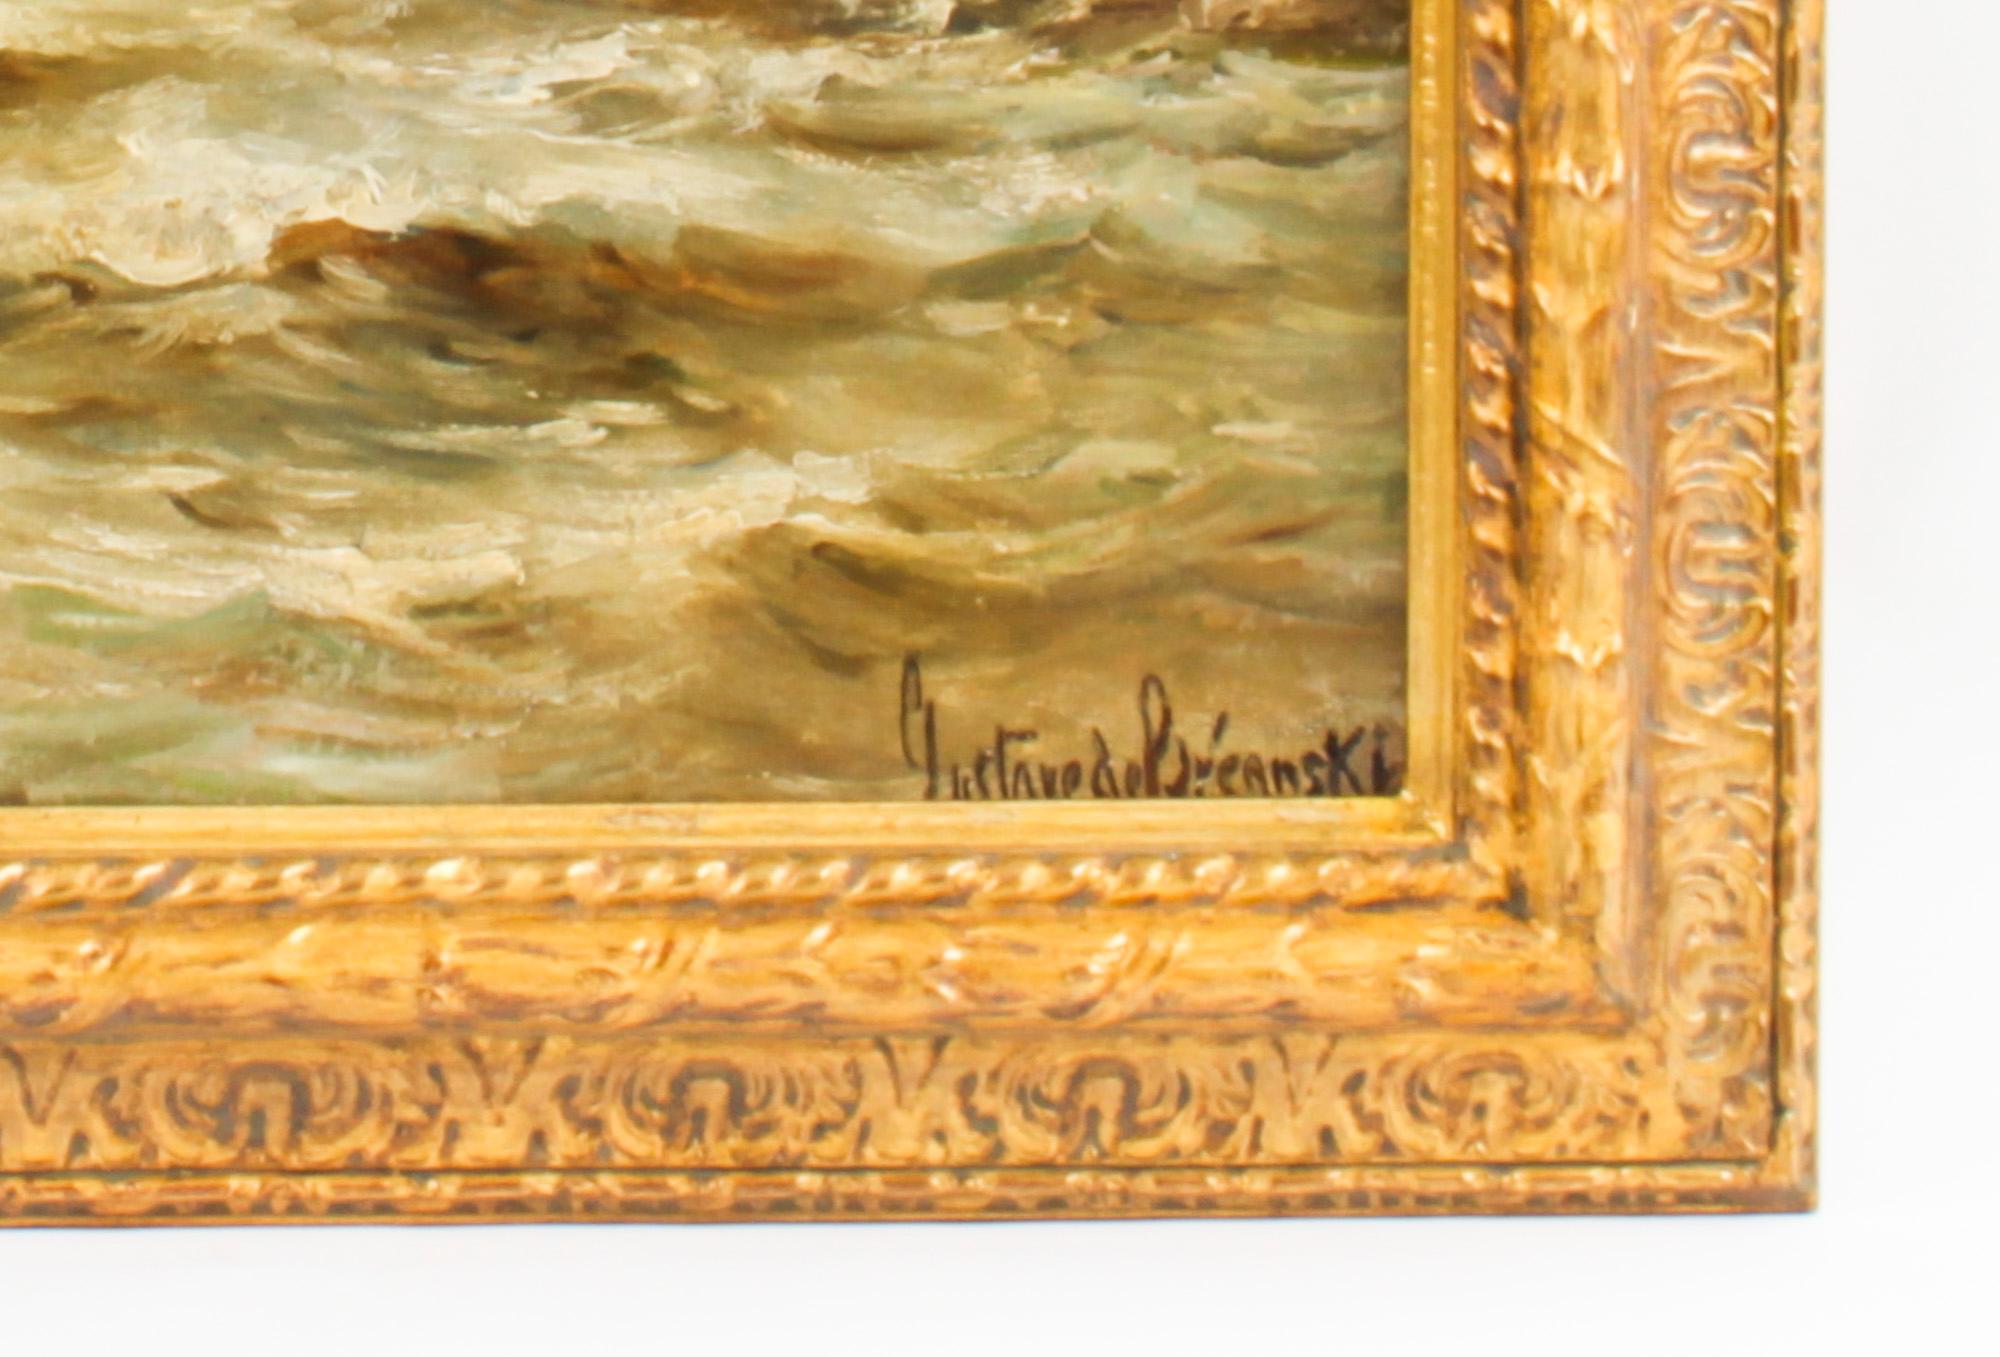 Late 19th Century Antique Oil on Canvas Seascape Painting Gustave De Bréanski, 19th Century